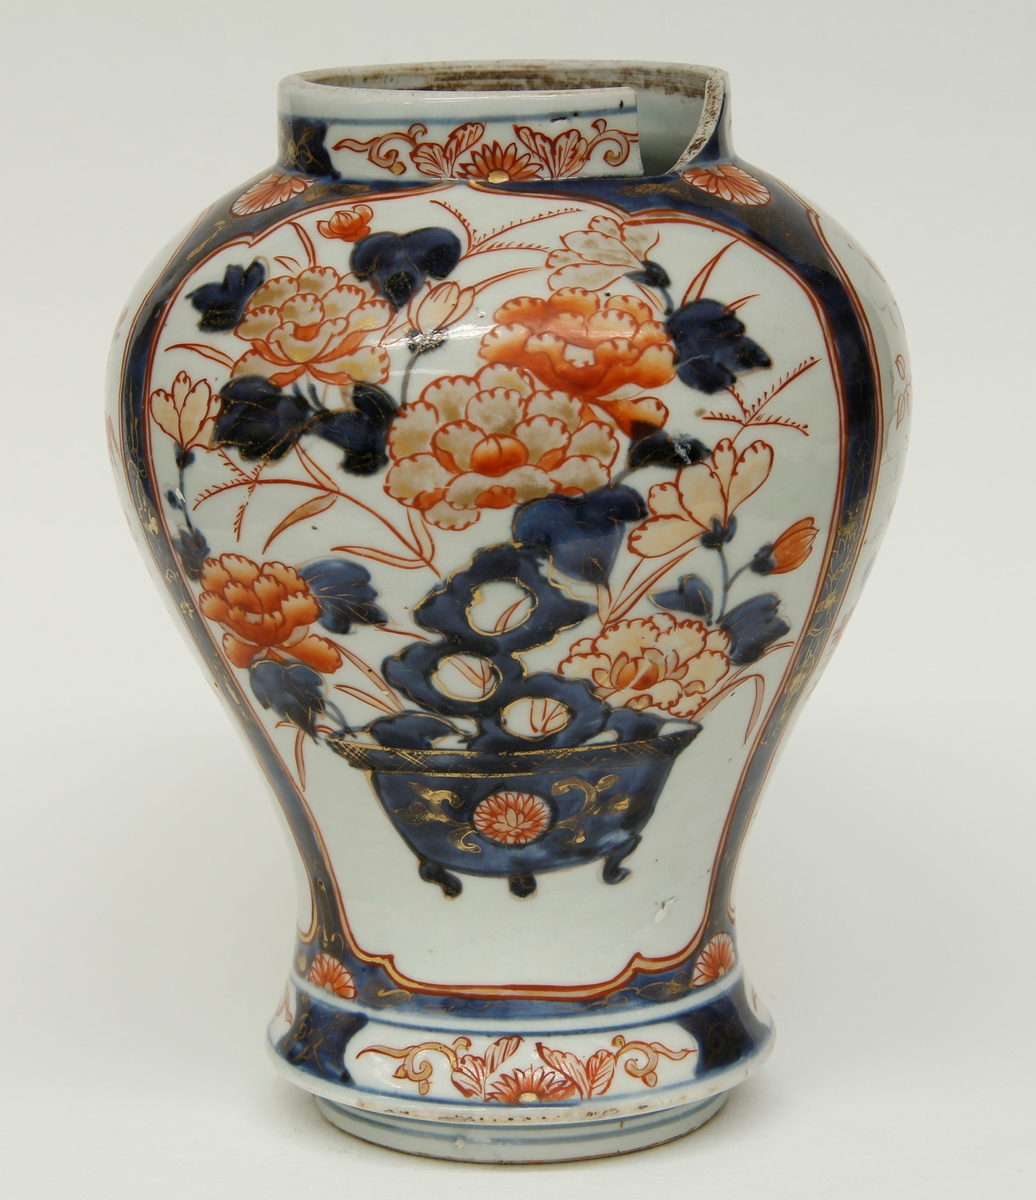 Balusterformet vase, kort, bred sylindrisk hals. Blomsterornamenter i blått og rødt med gullstaffering. Ingen produsentmerker.